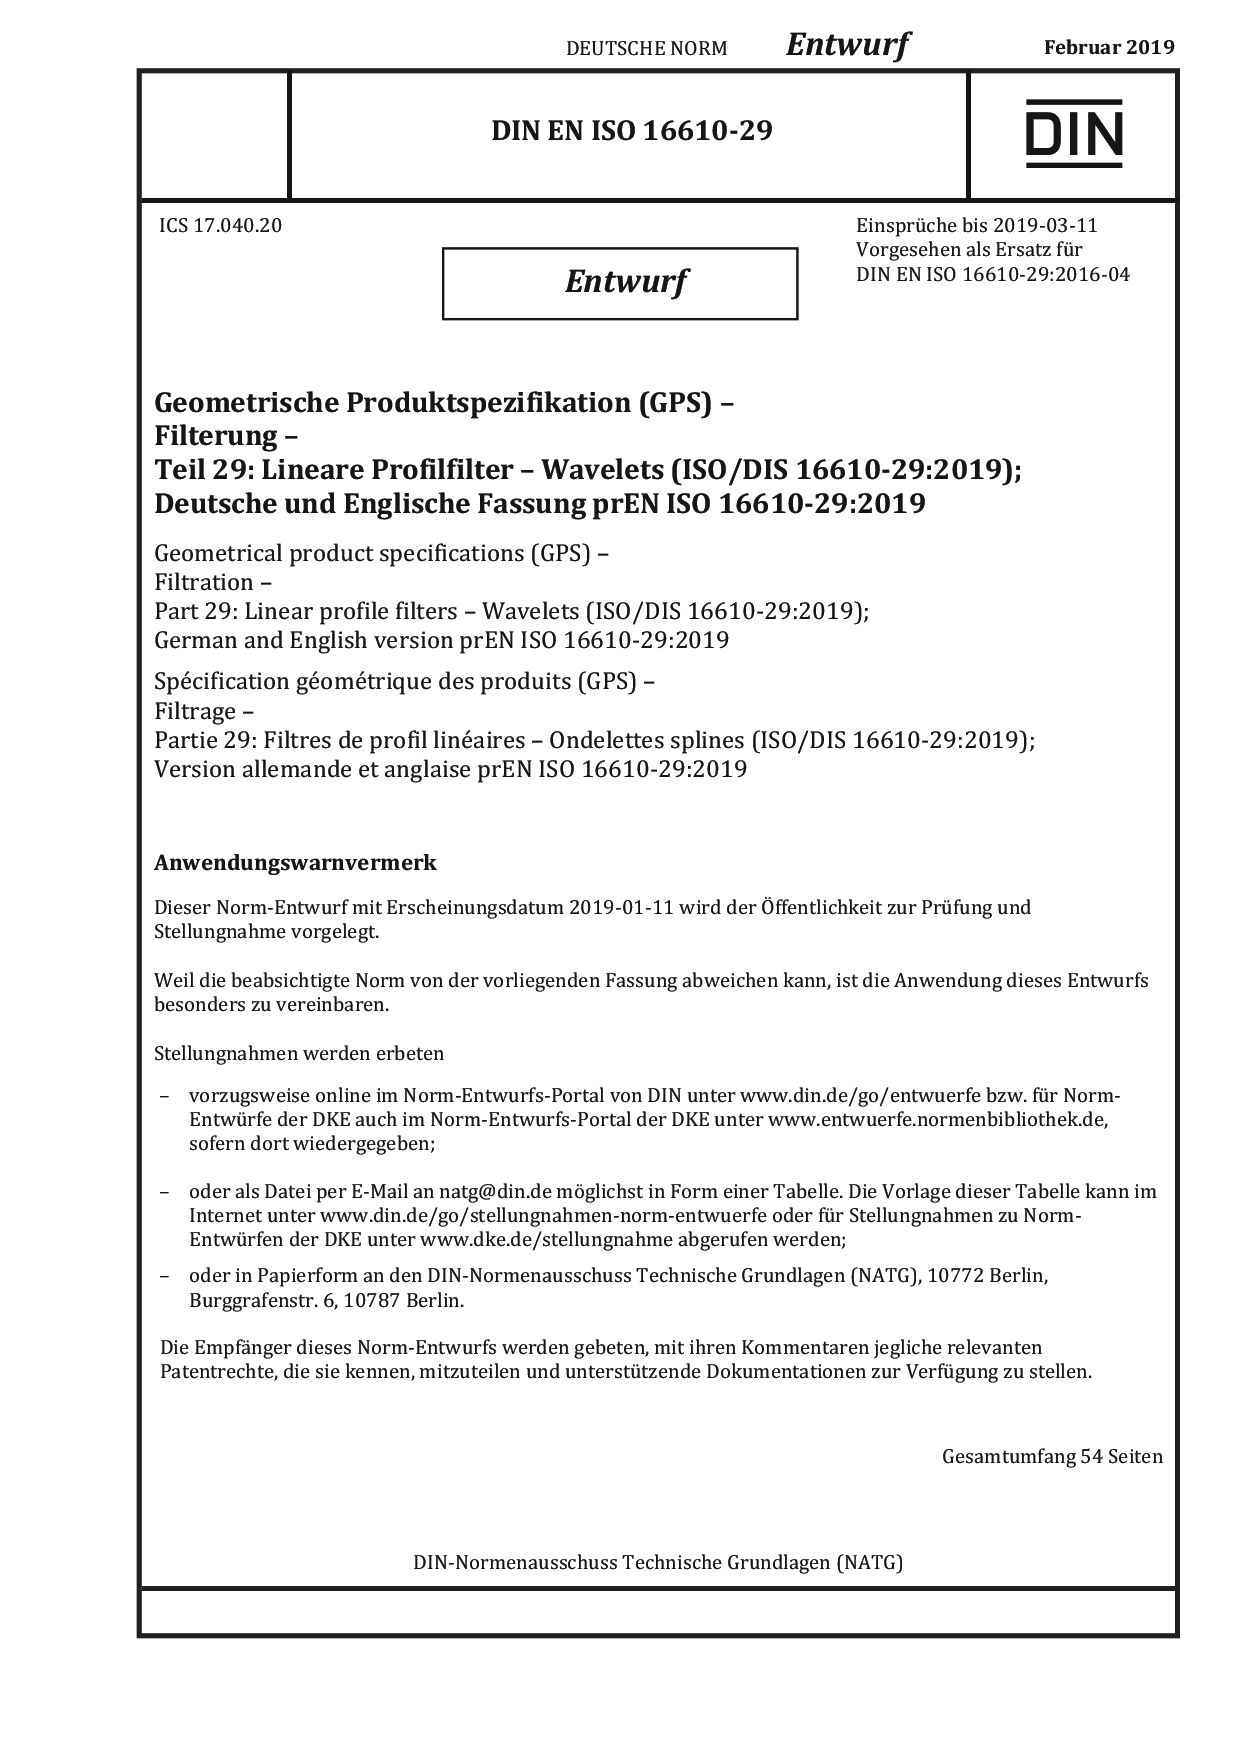 DIN EN ISO 16610-29 E:2019-02封面图